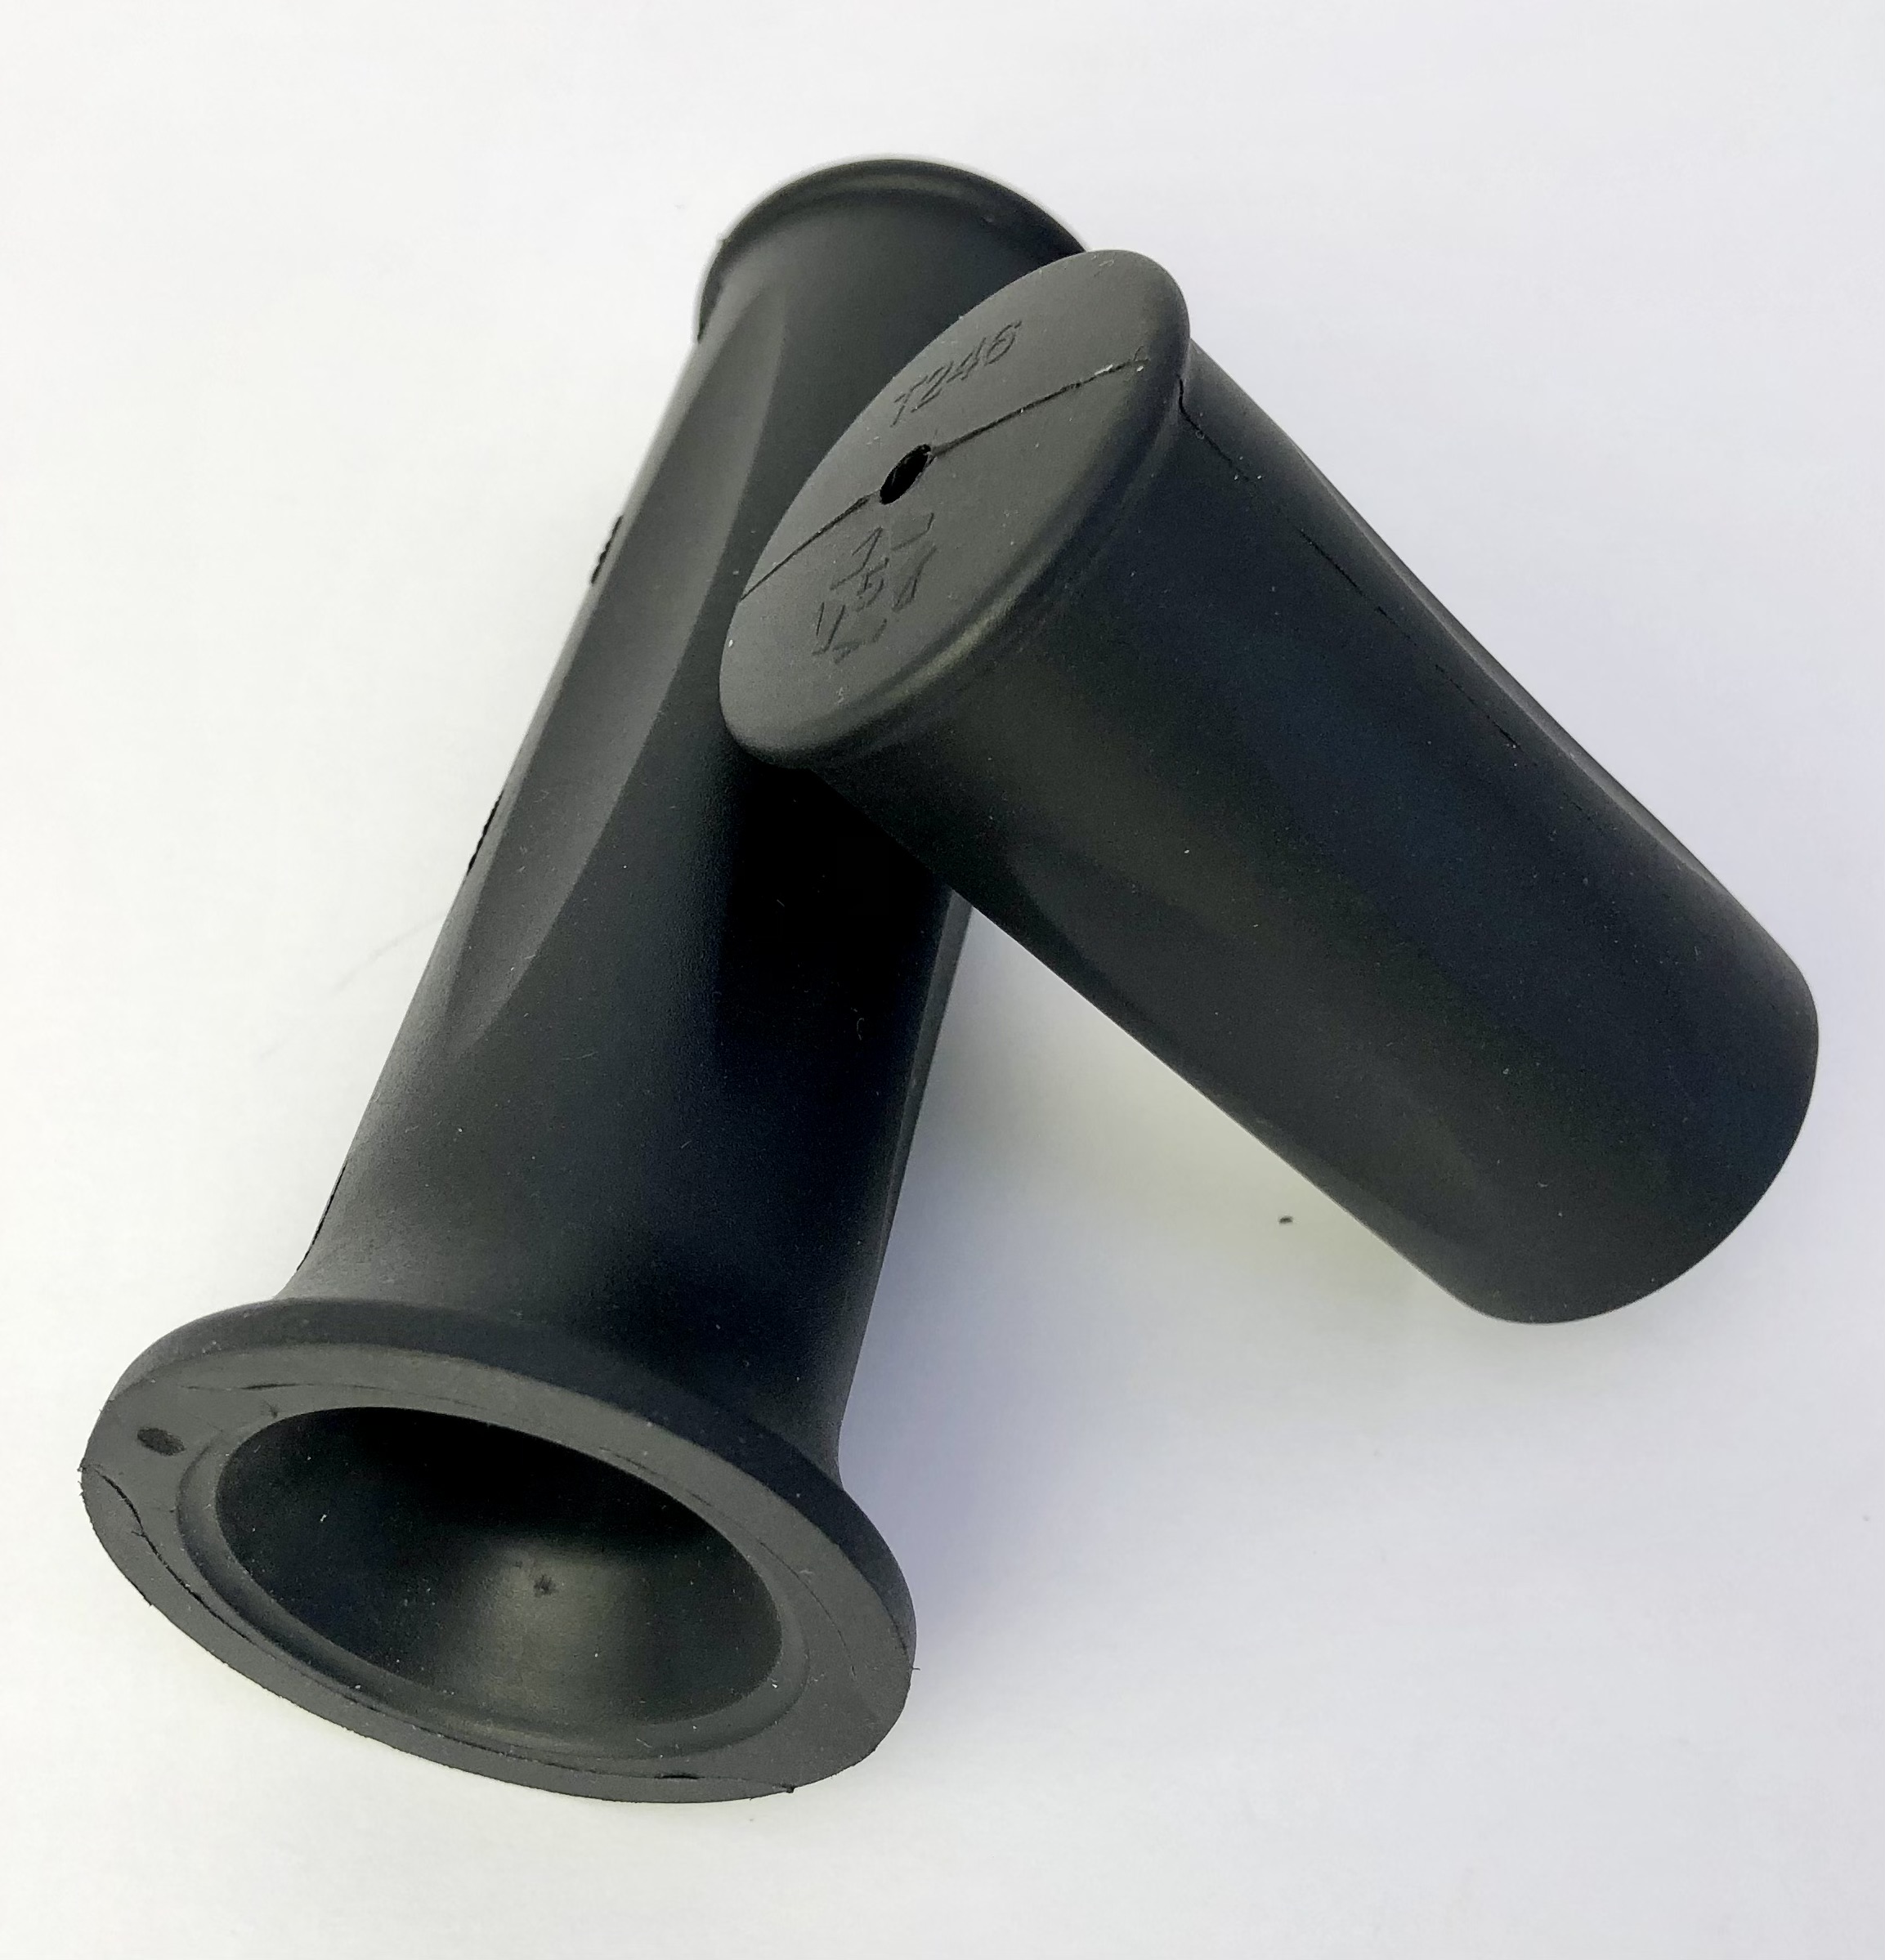 Rubber Grips for handlebar black, long and short